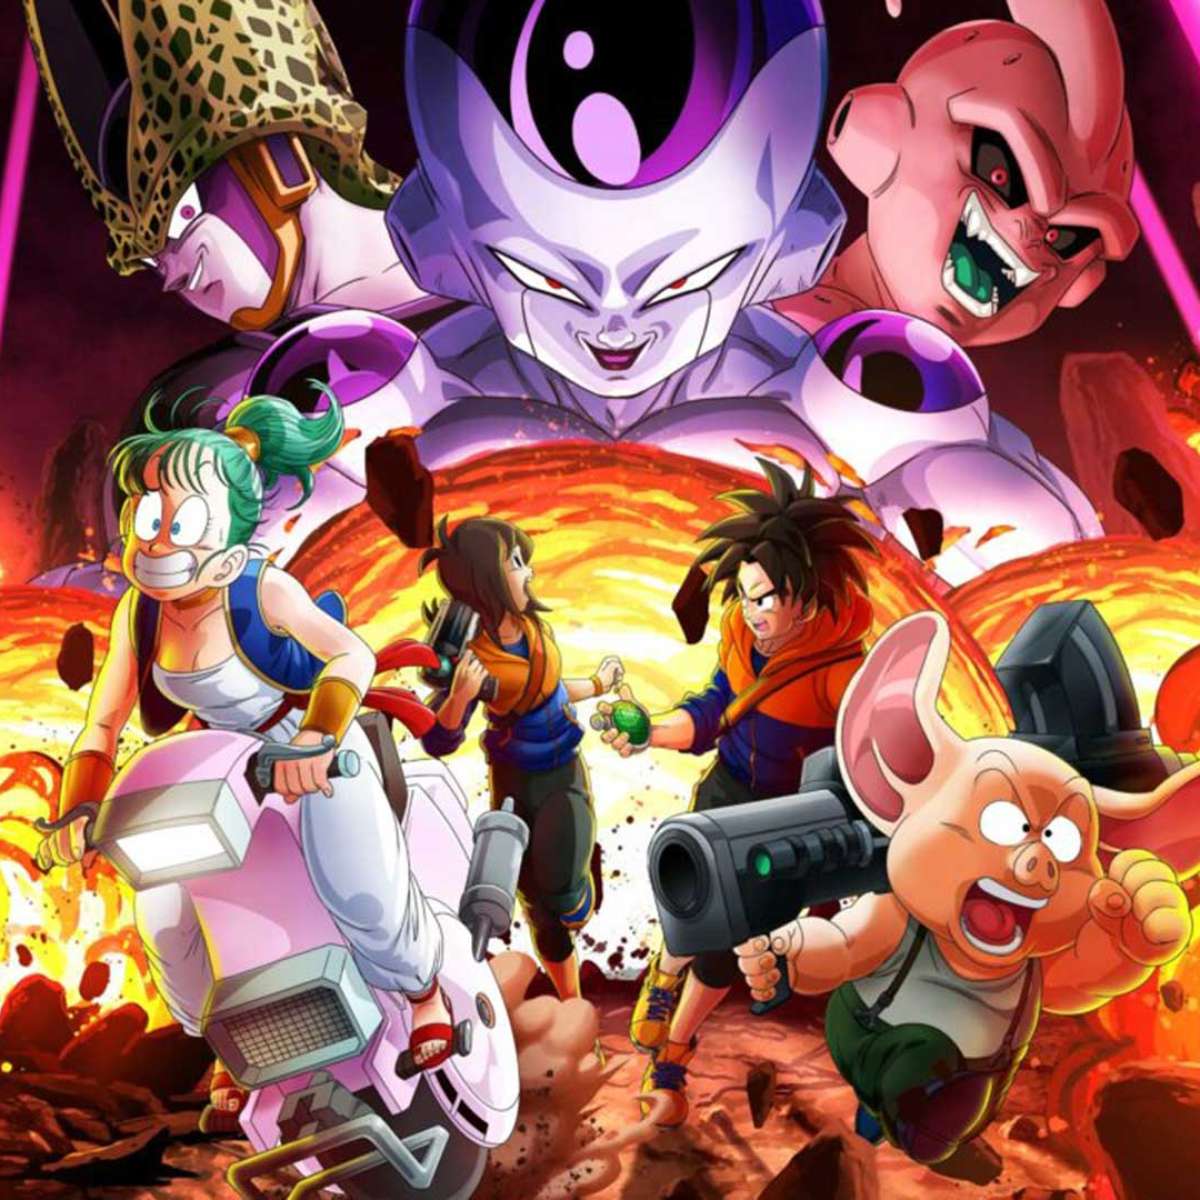 Dragon Ball Z - Battle of Gods, terá dublagem original